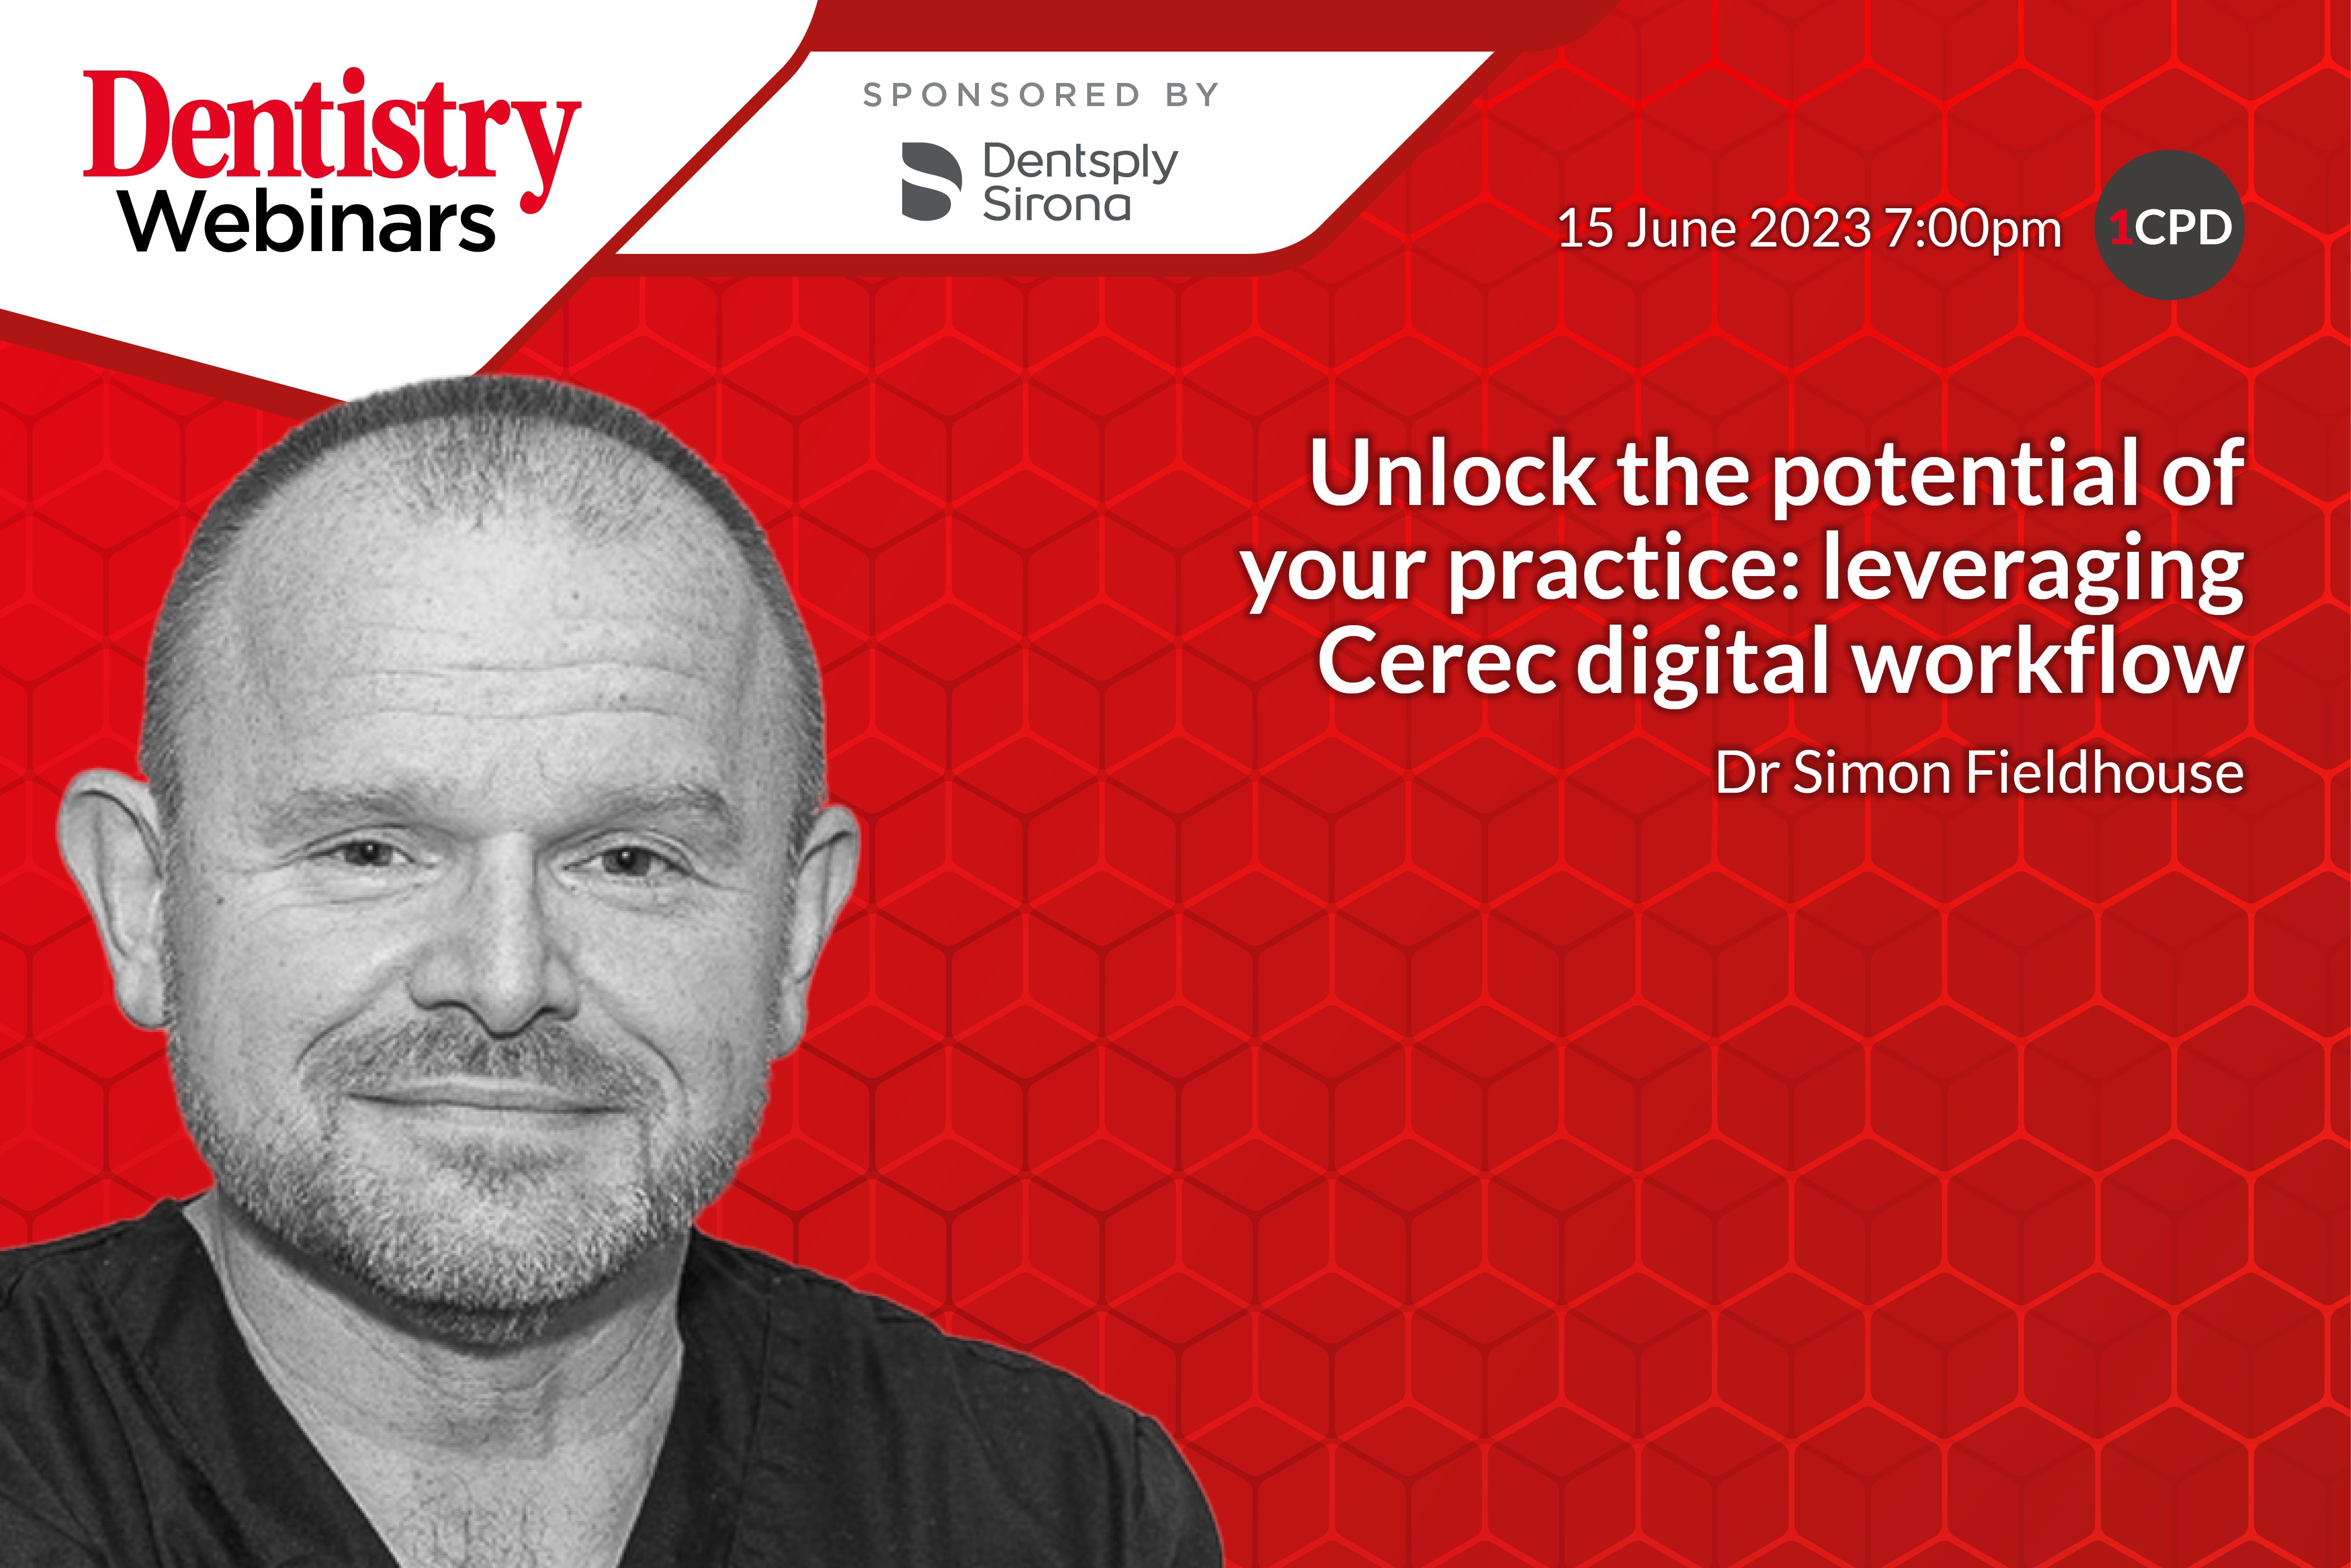 Unlock the potential of your practice: leveraging Cerec digital workflow